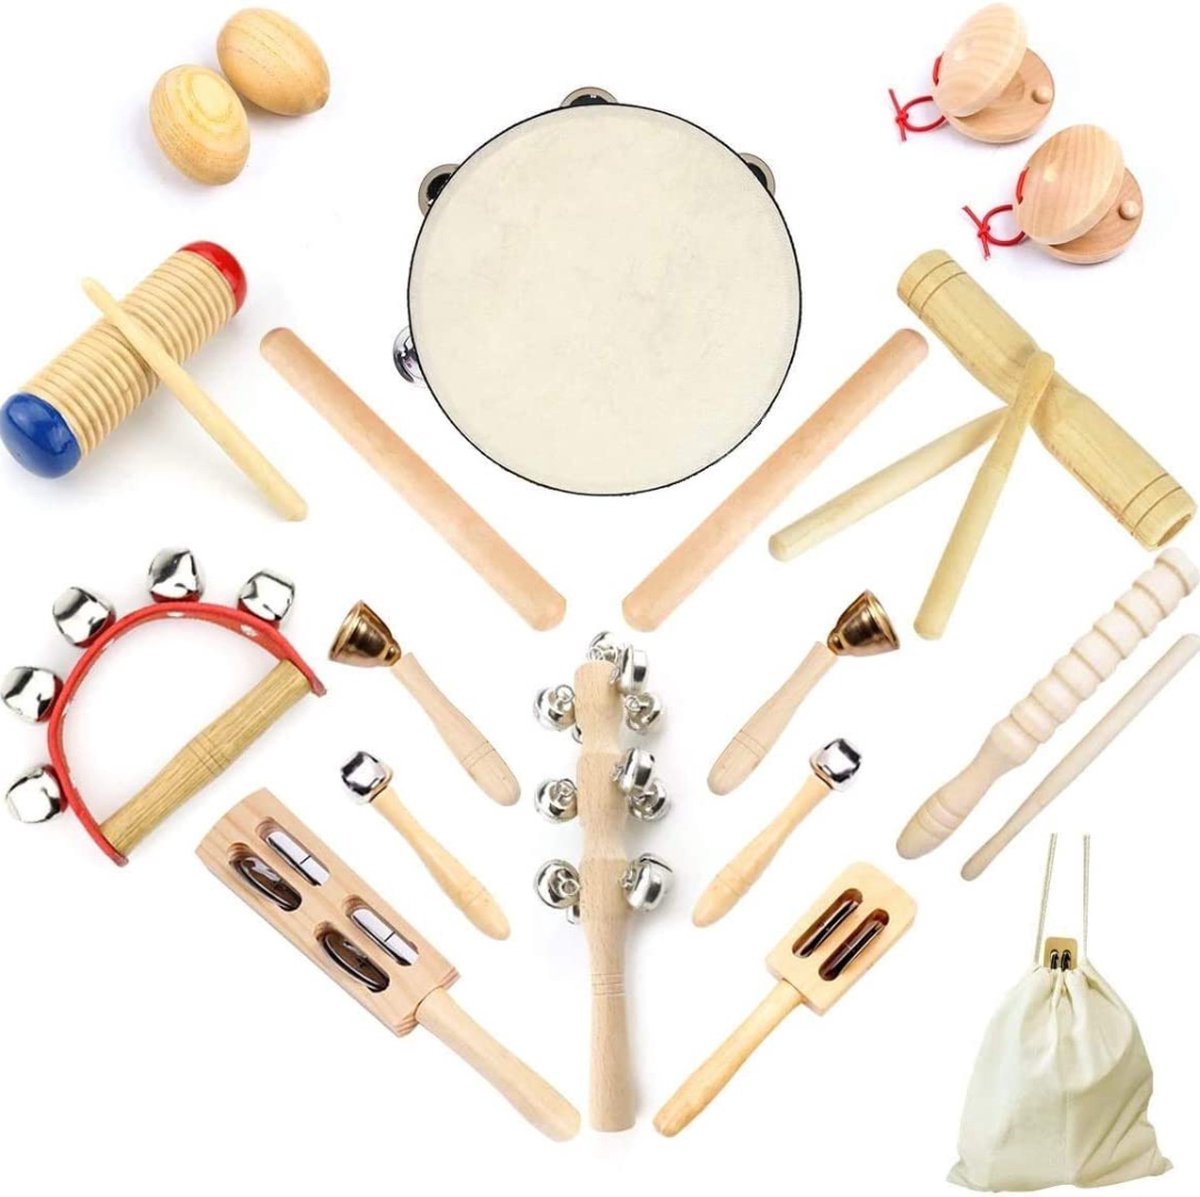 Set d' Instruments de musique en bois avec sac à dos - 24 pièces